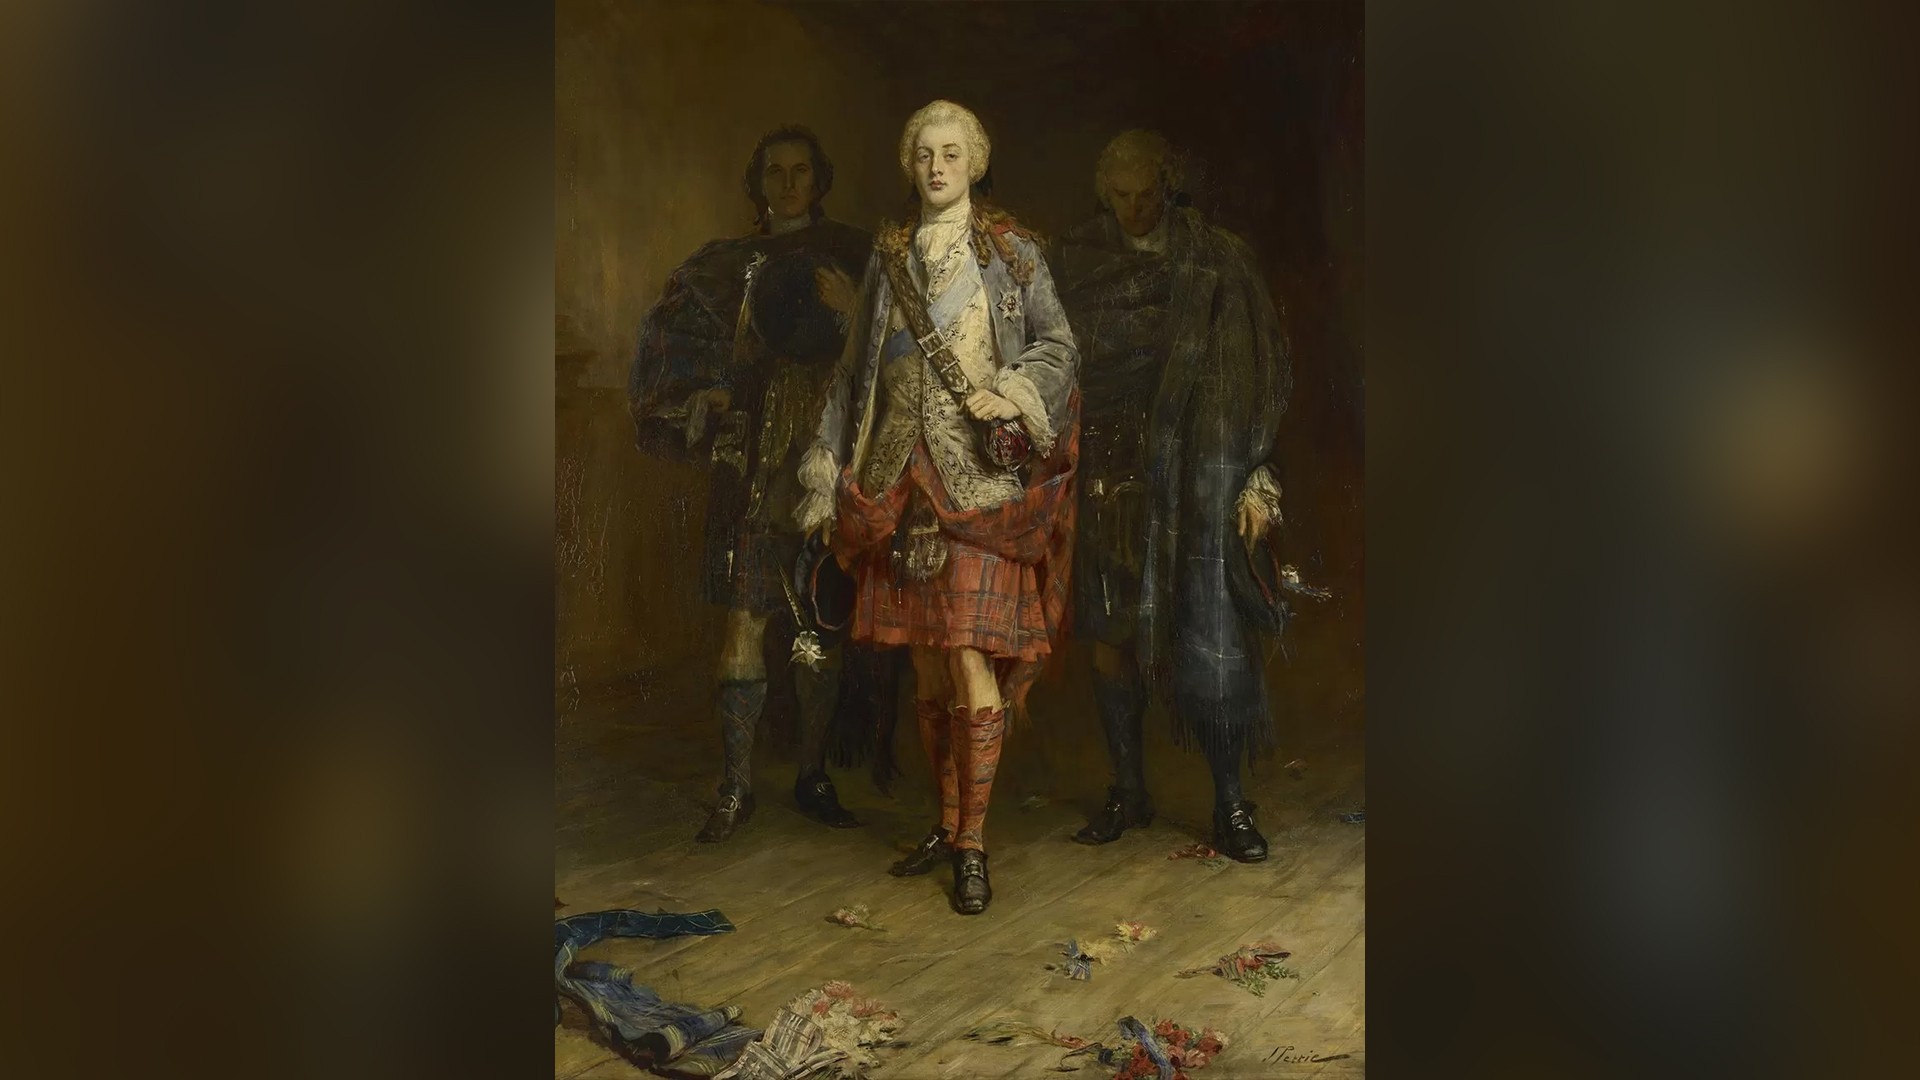 Тази картина от 19-ти век на Бони принц Чарли сега виси в двореца Холирудхаус в Единбург, официалната резиденция на британския монарх в Шотландия.